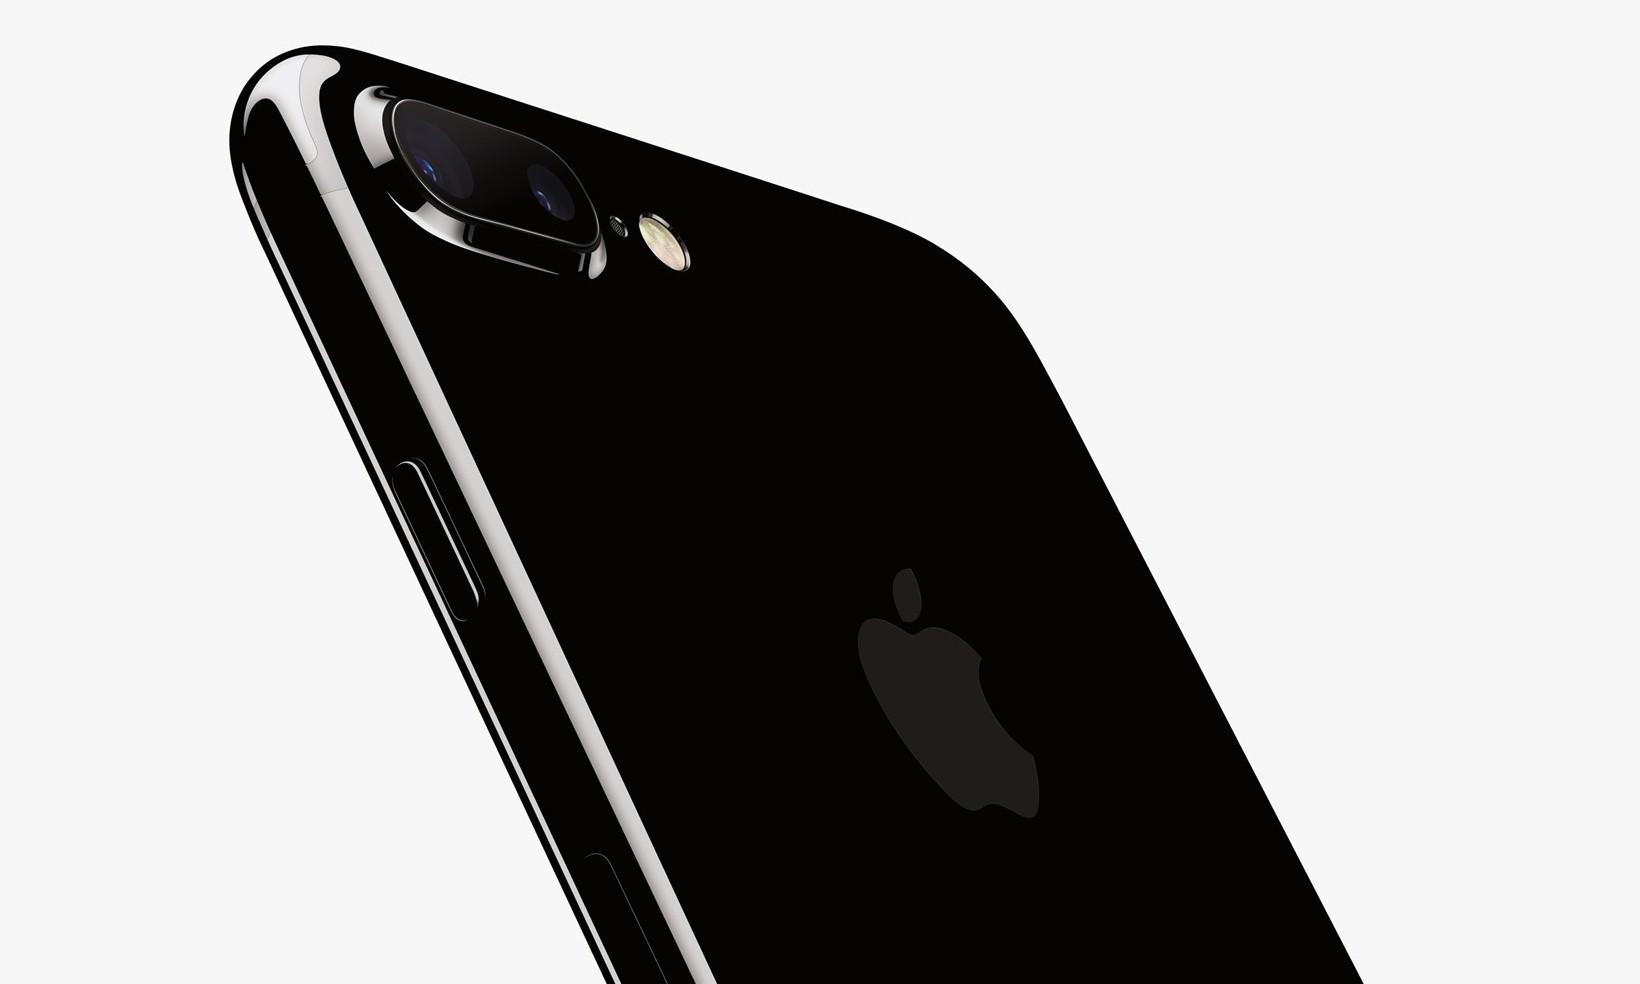 苹果官方承认 iPhone 7 亮黑配色容易 “毁容”